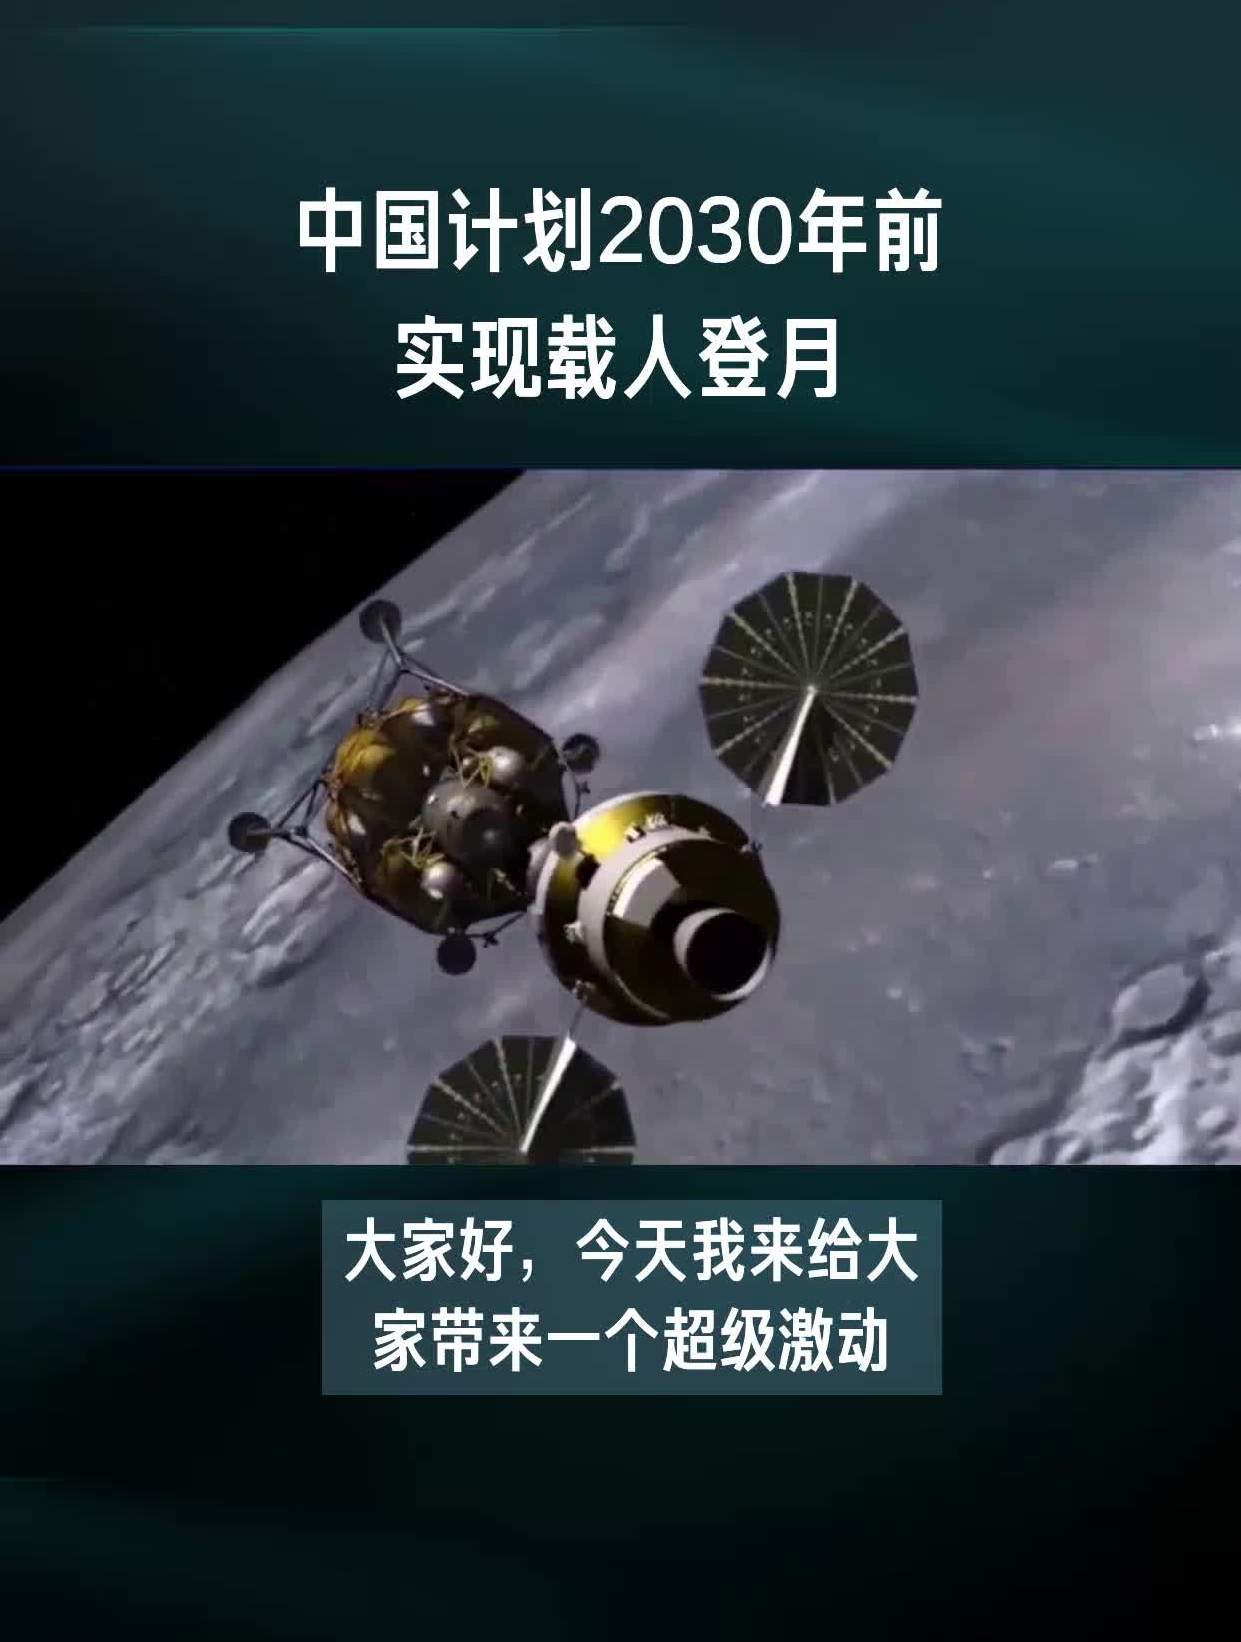 中国登月计划最新情况图片